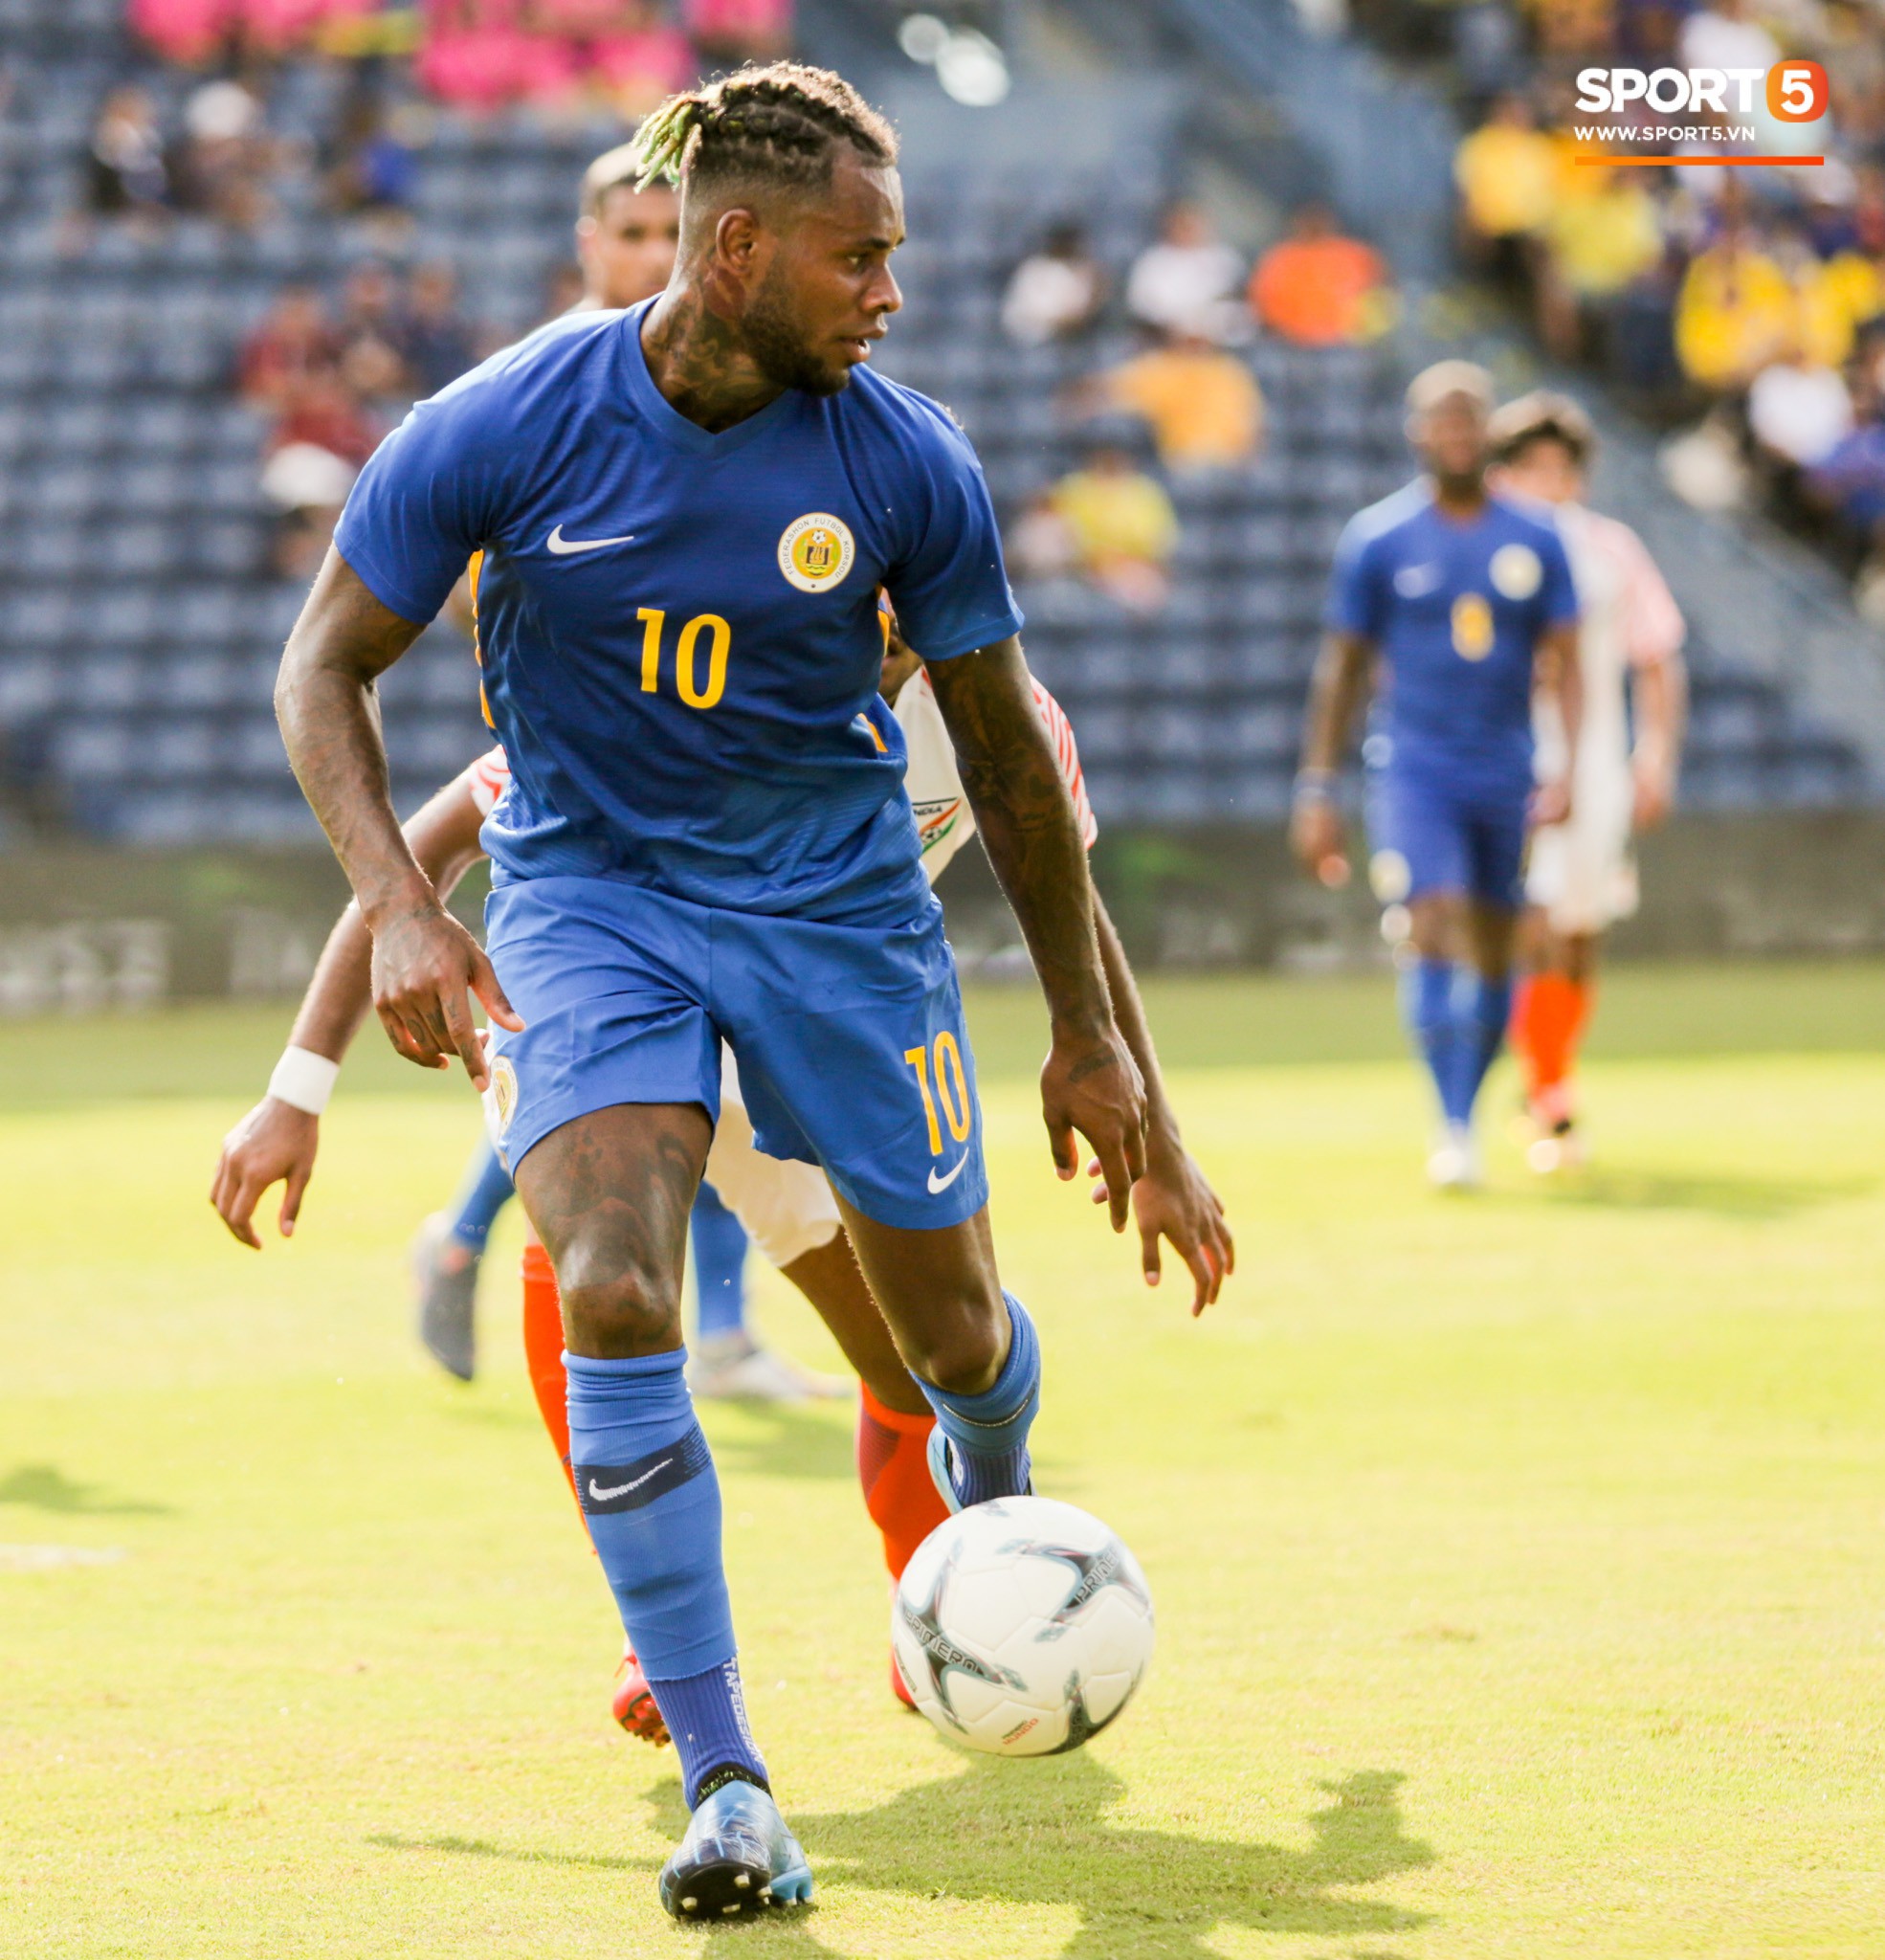 Tuyển thủ Curacao có giá trị bằng 2 đội hình tuyển Việt Nam, sở hữu kiểu đầu chất nhất Kings Cup 2019 - Ảnh 4.